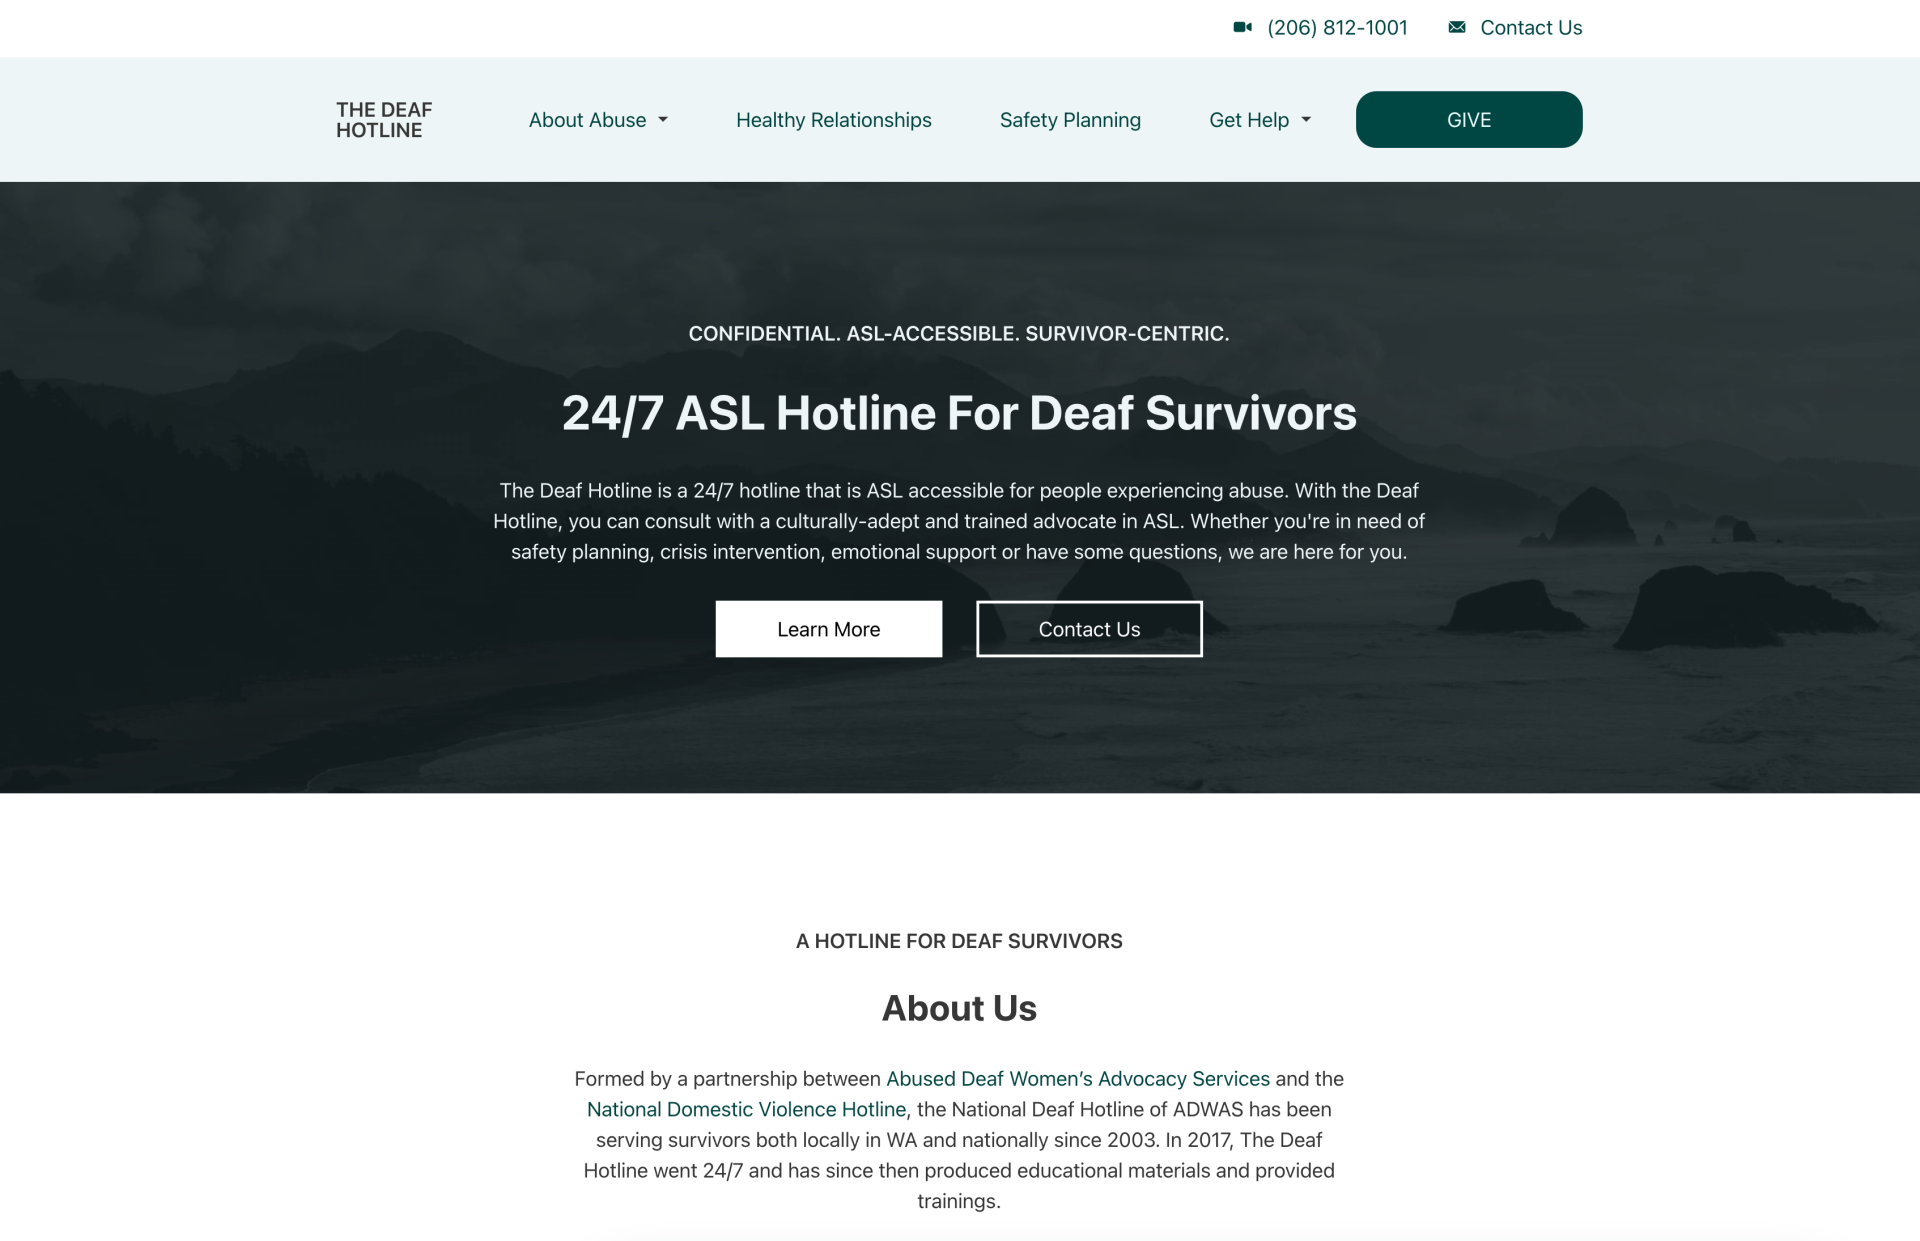 The Deaf Hotline Website